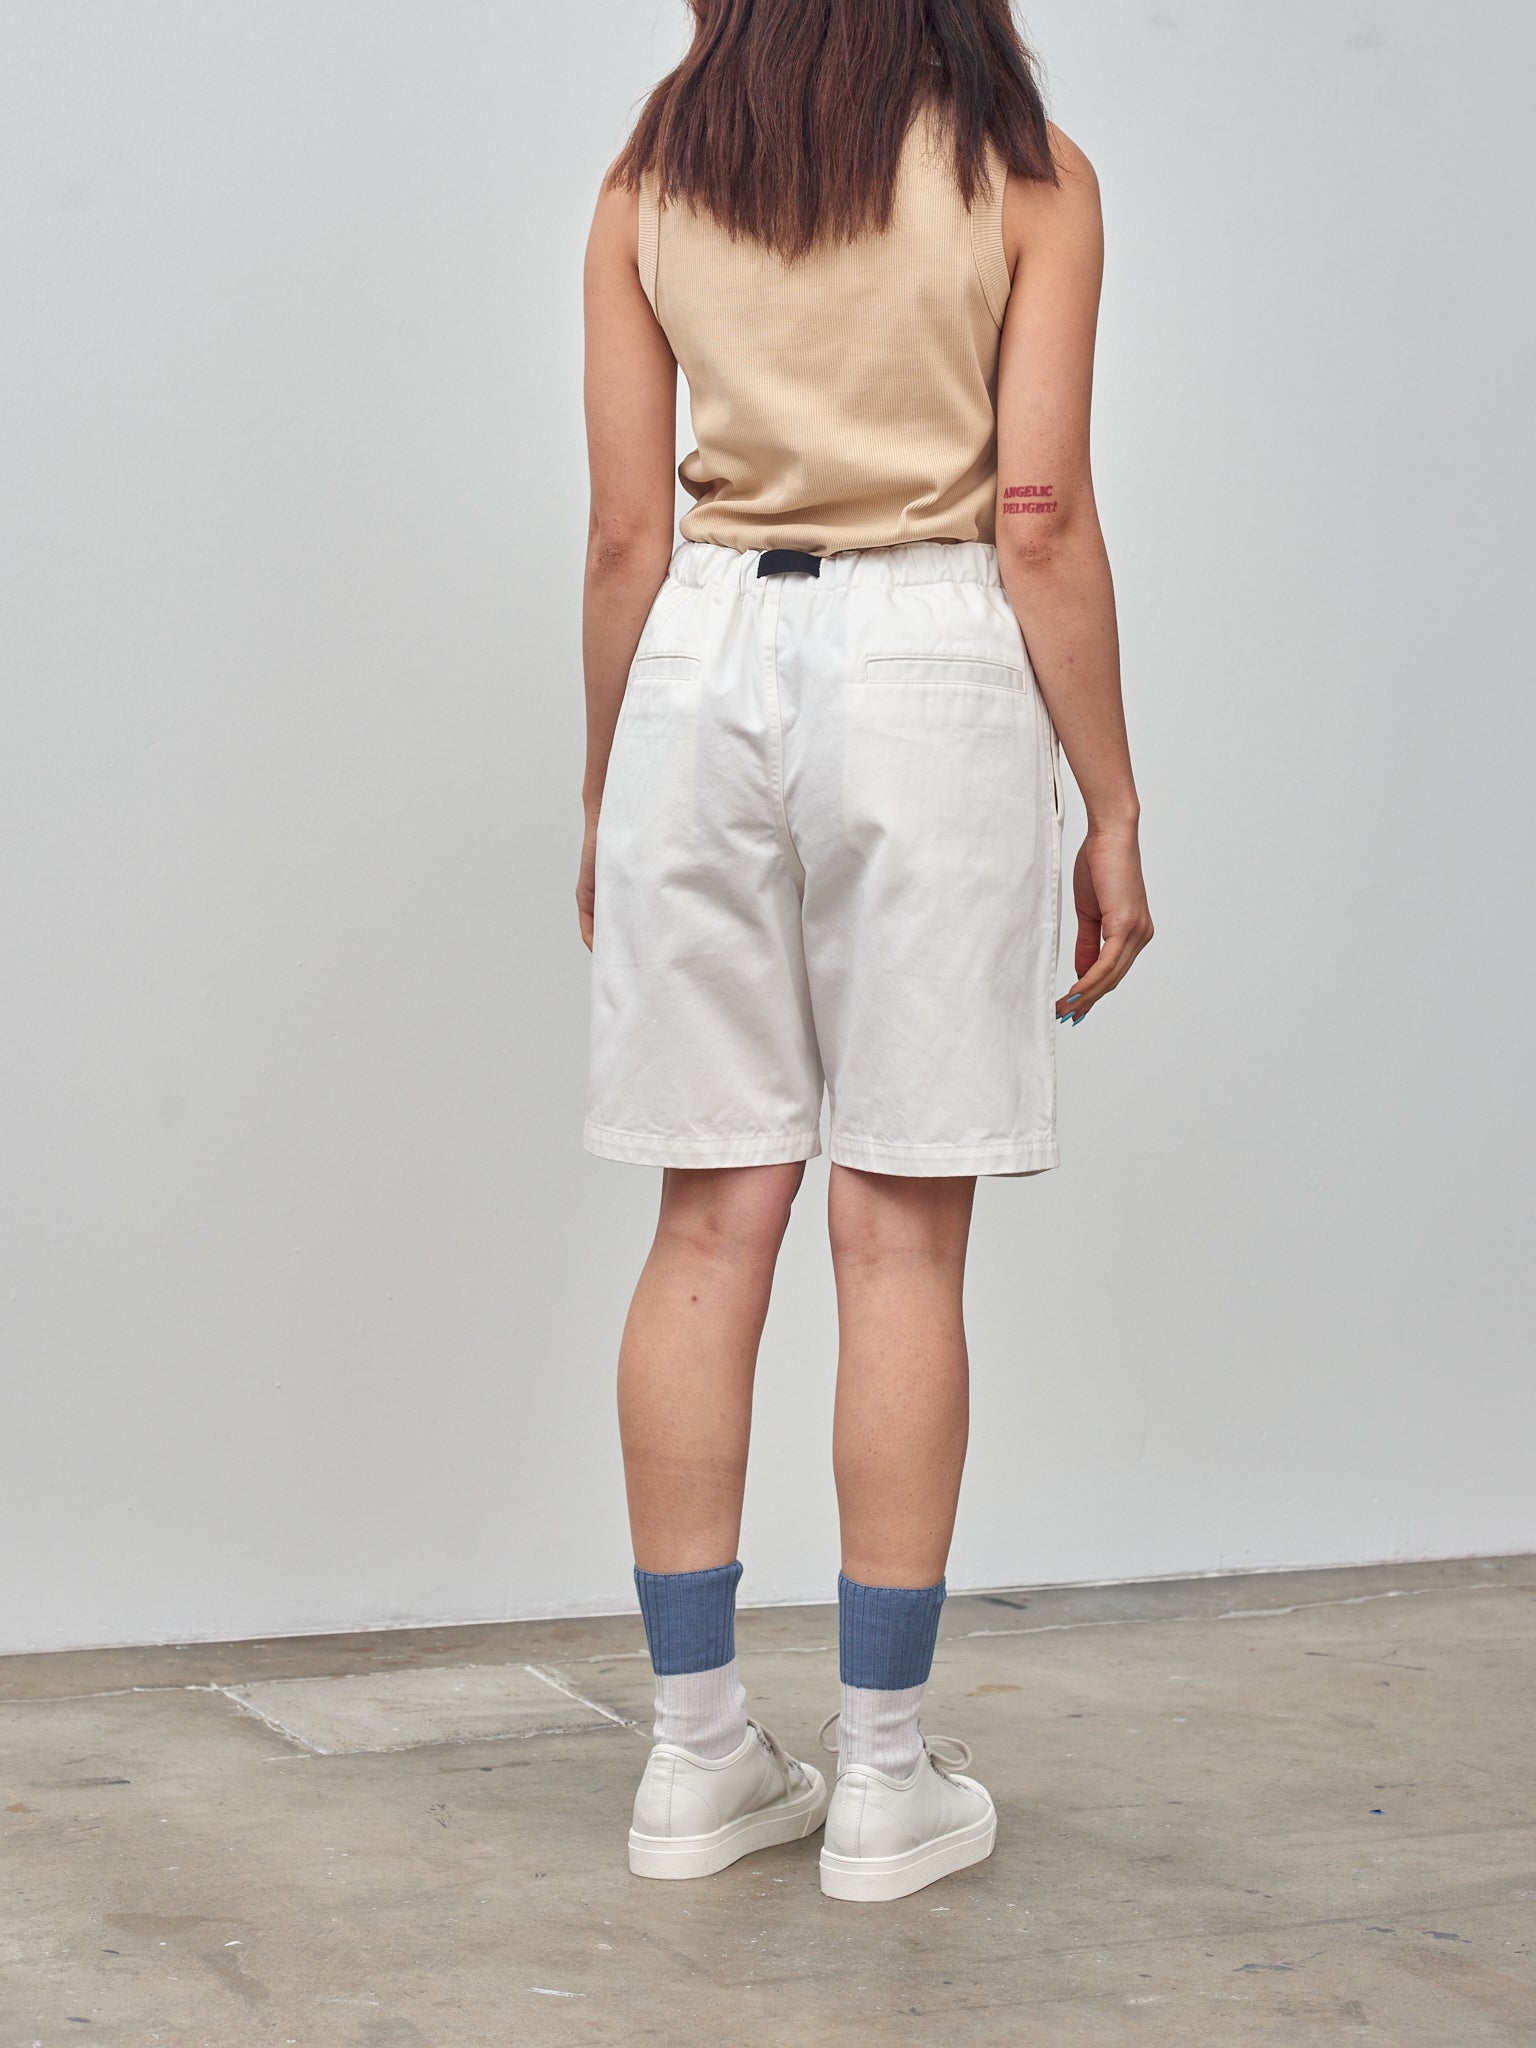 Namu Shop - Y Organic Cotton Chino Shorts - White